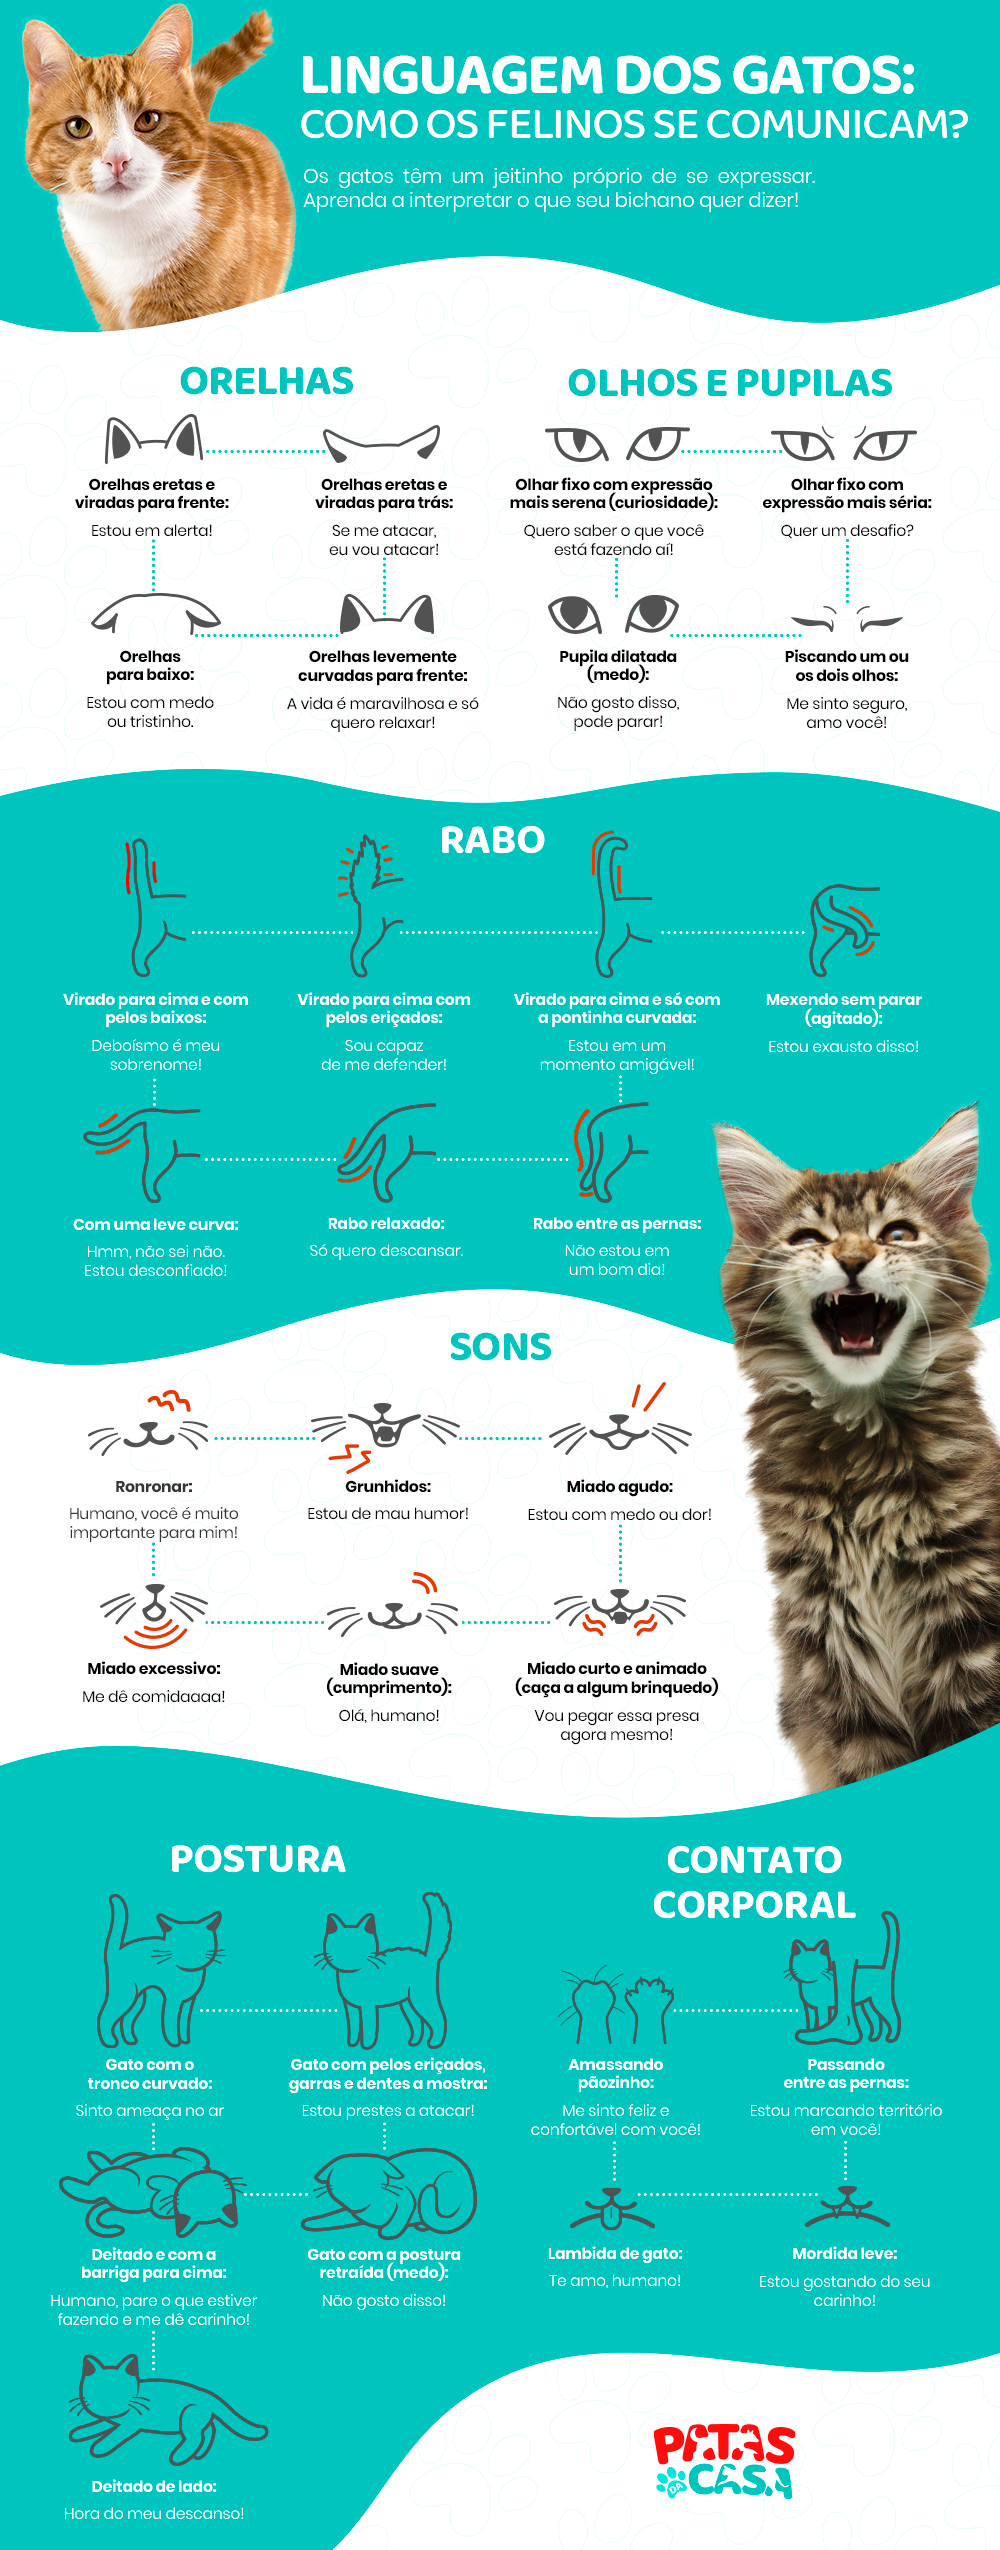  Мачји језик: погледајте најчешће начине на које ваша мачка комуницира са вама у инфографици